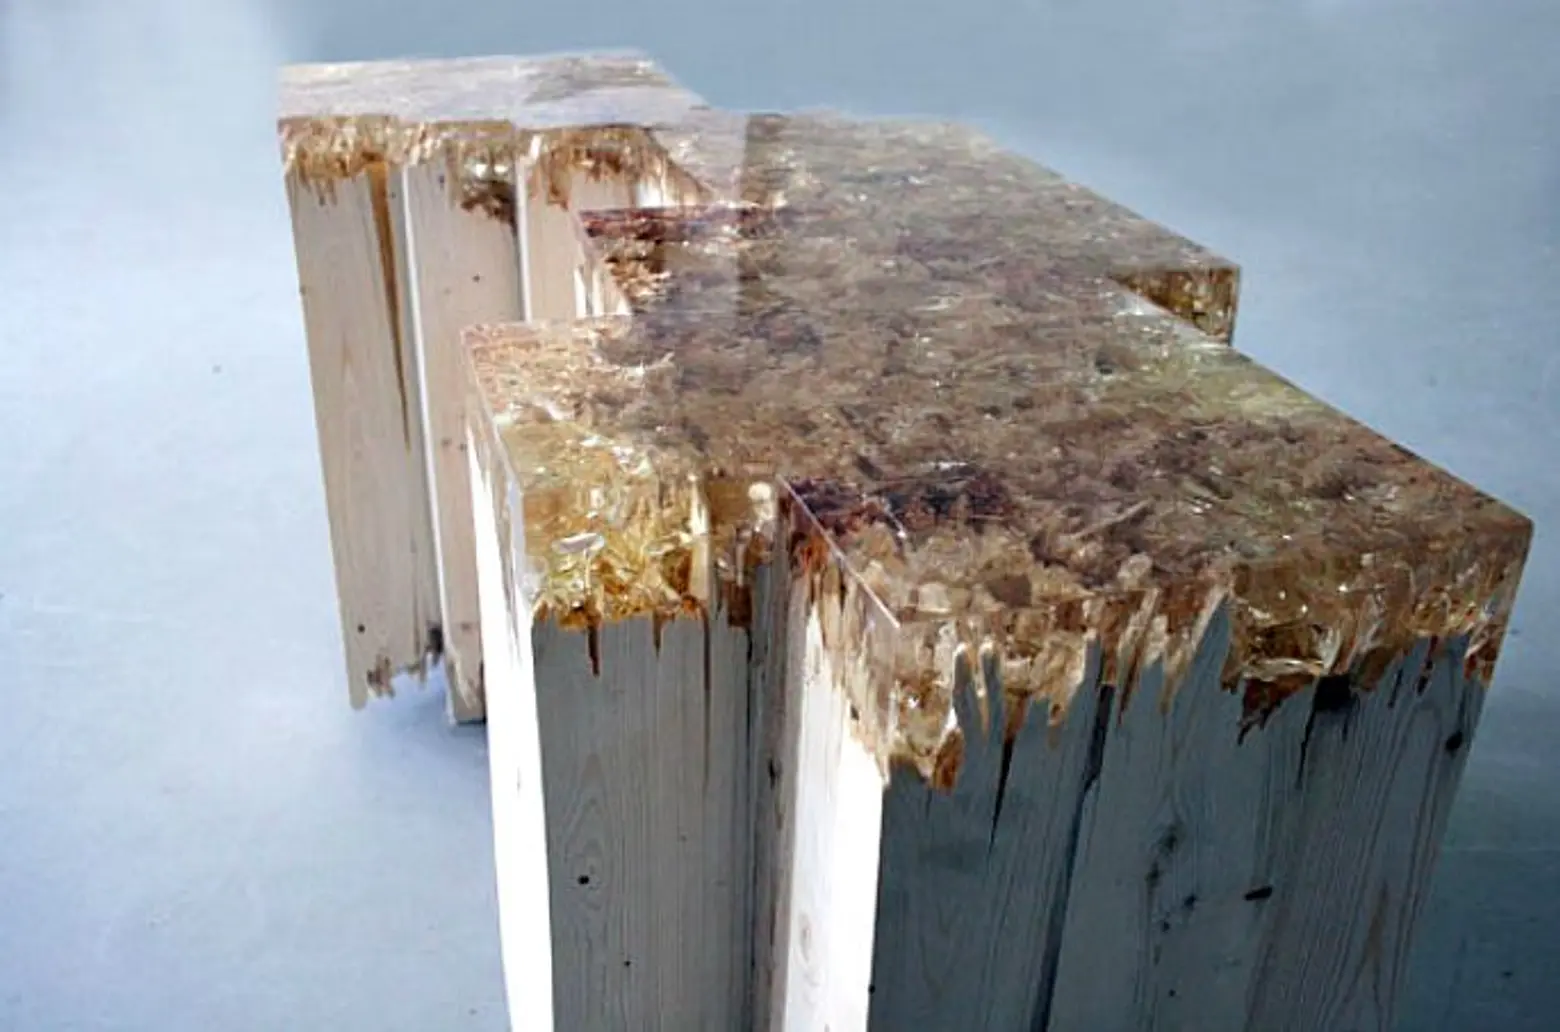 Broken Board Series 2, Jack Craig, furniture design, caramelized resin